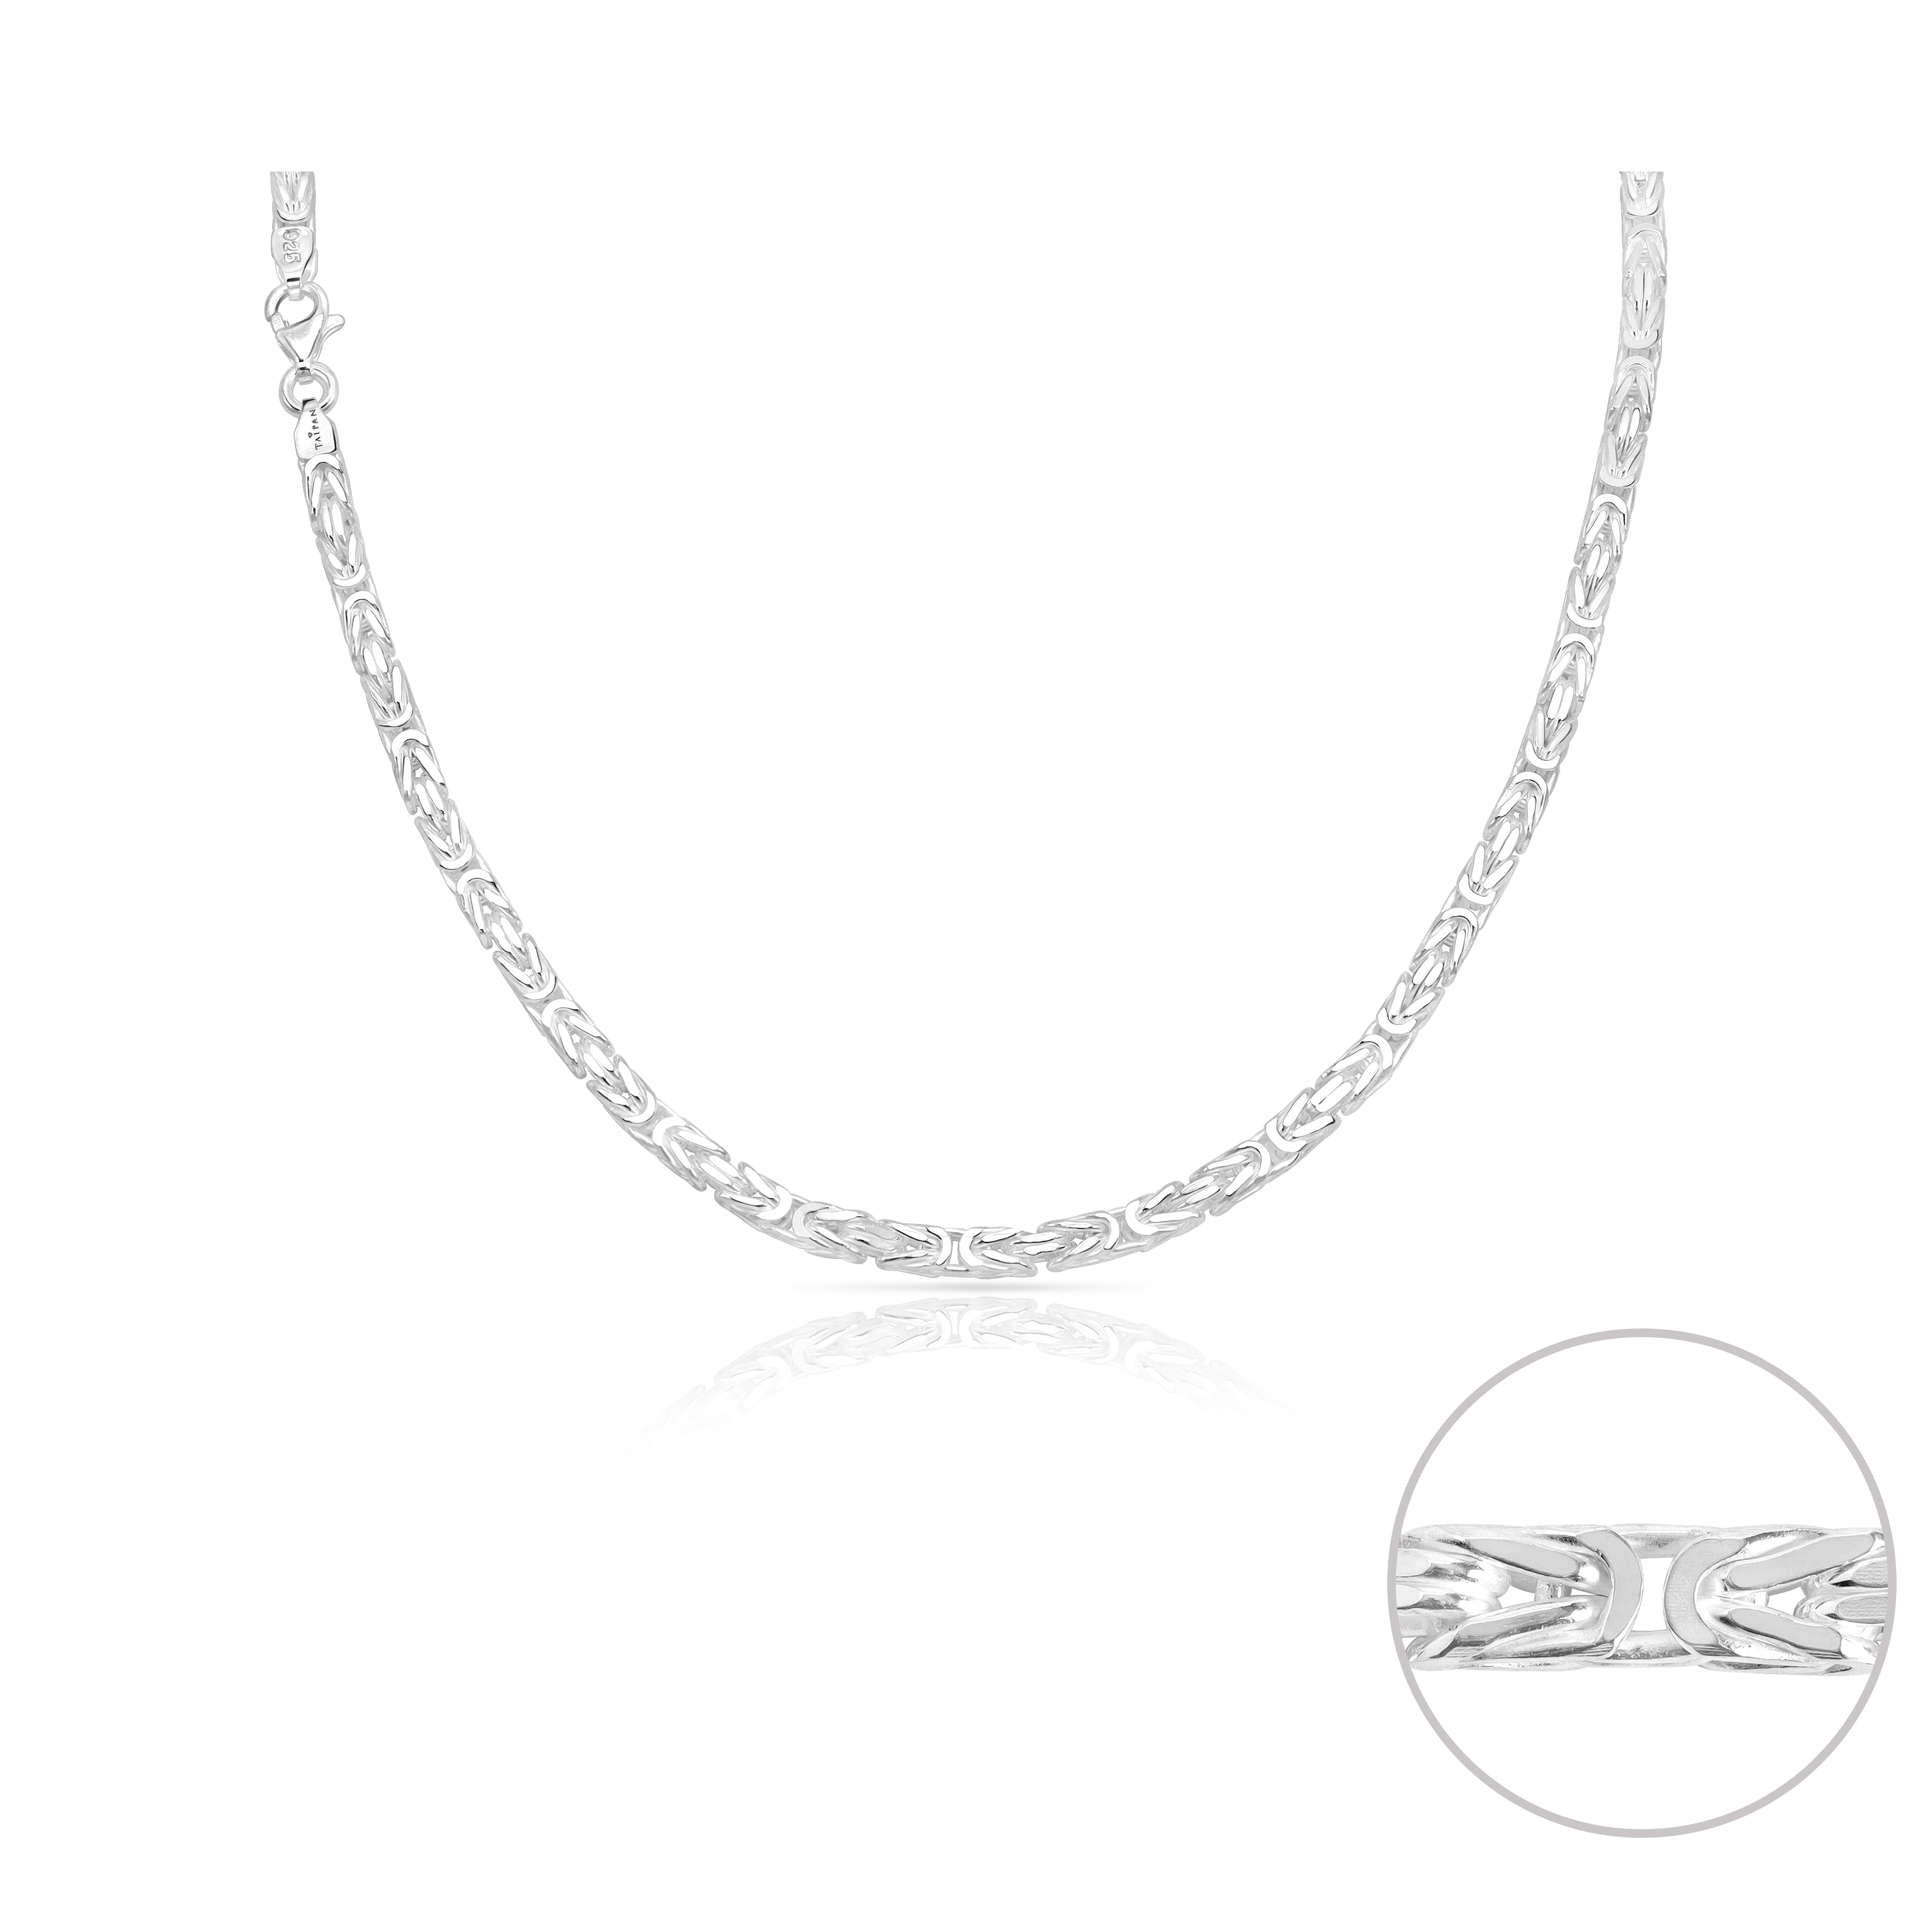 Königskette vierkant 4mm breit 50cm lang 925 Sterling Silber (K946) - Taipan Schmuck